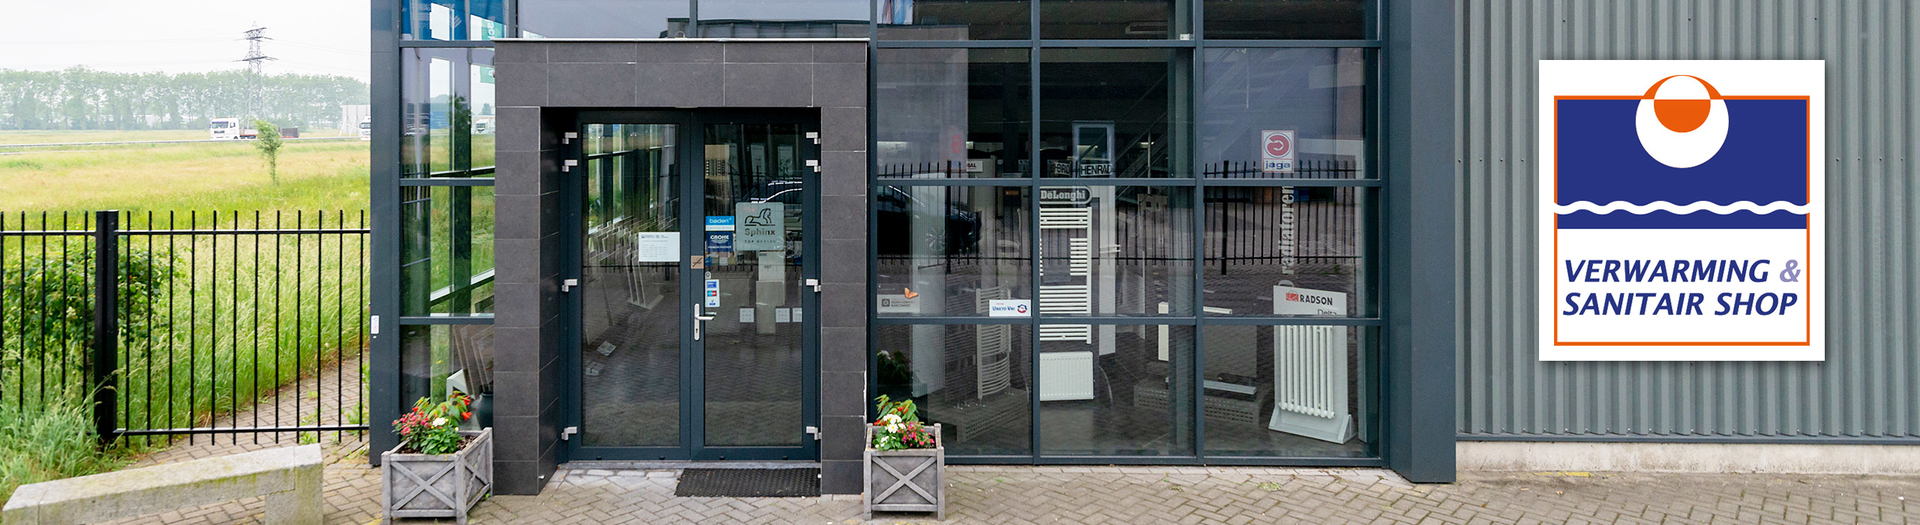 Treinstation Ter ere van nauwkeurig Badkamers Oud Gastel – Sanitair bij Baden+